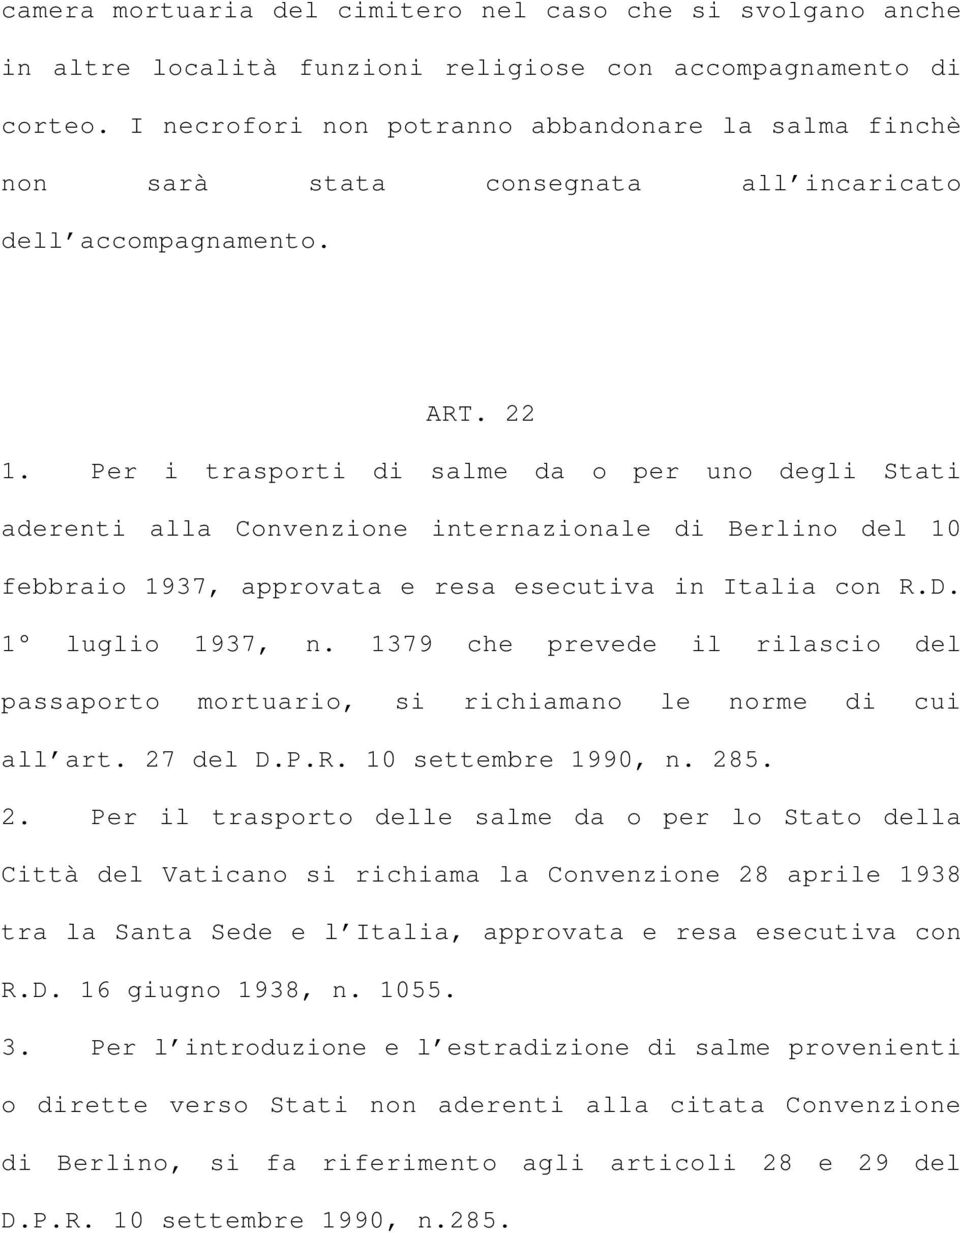 Per i trasporti di salme da o per uno degli Stati aderenti alla Convenzione internazionale di Berlino del 10 febbraio 1937, approvata e resa esecutiva in Italia con R.D. 1 luglio 1937, n.